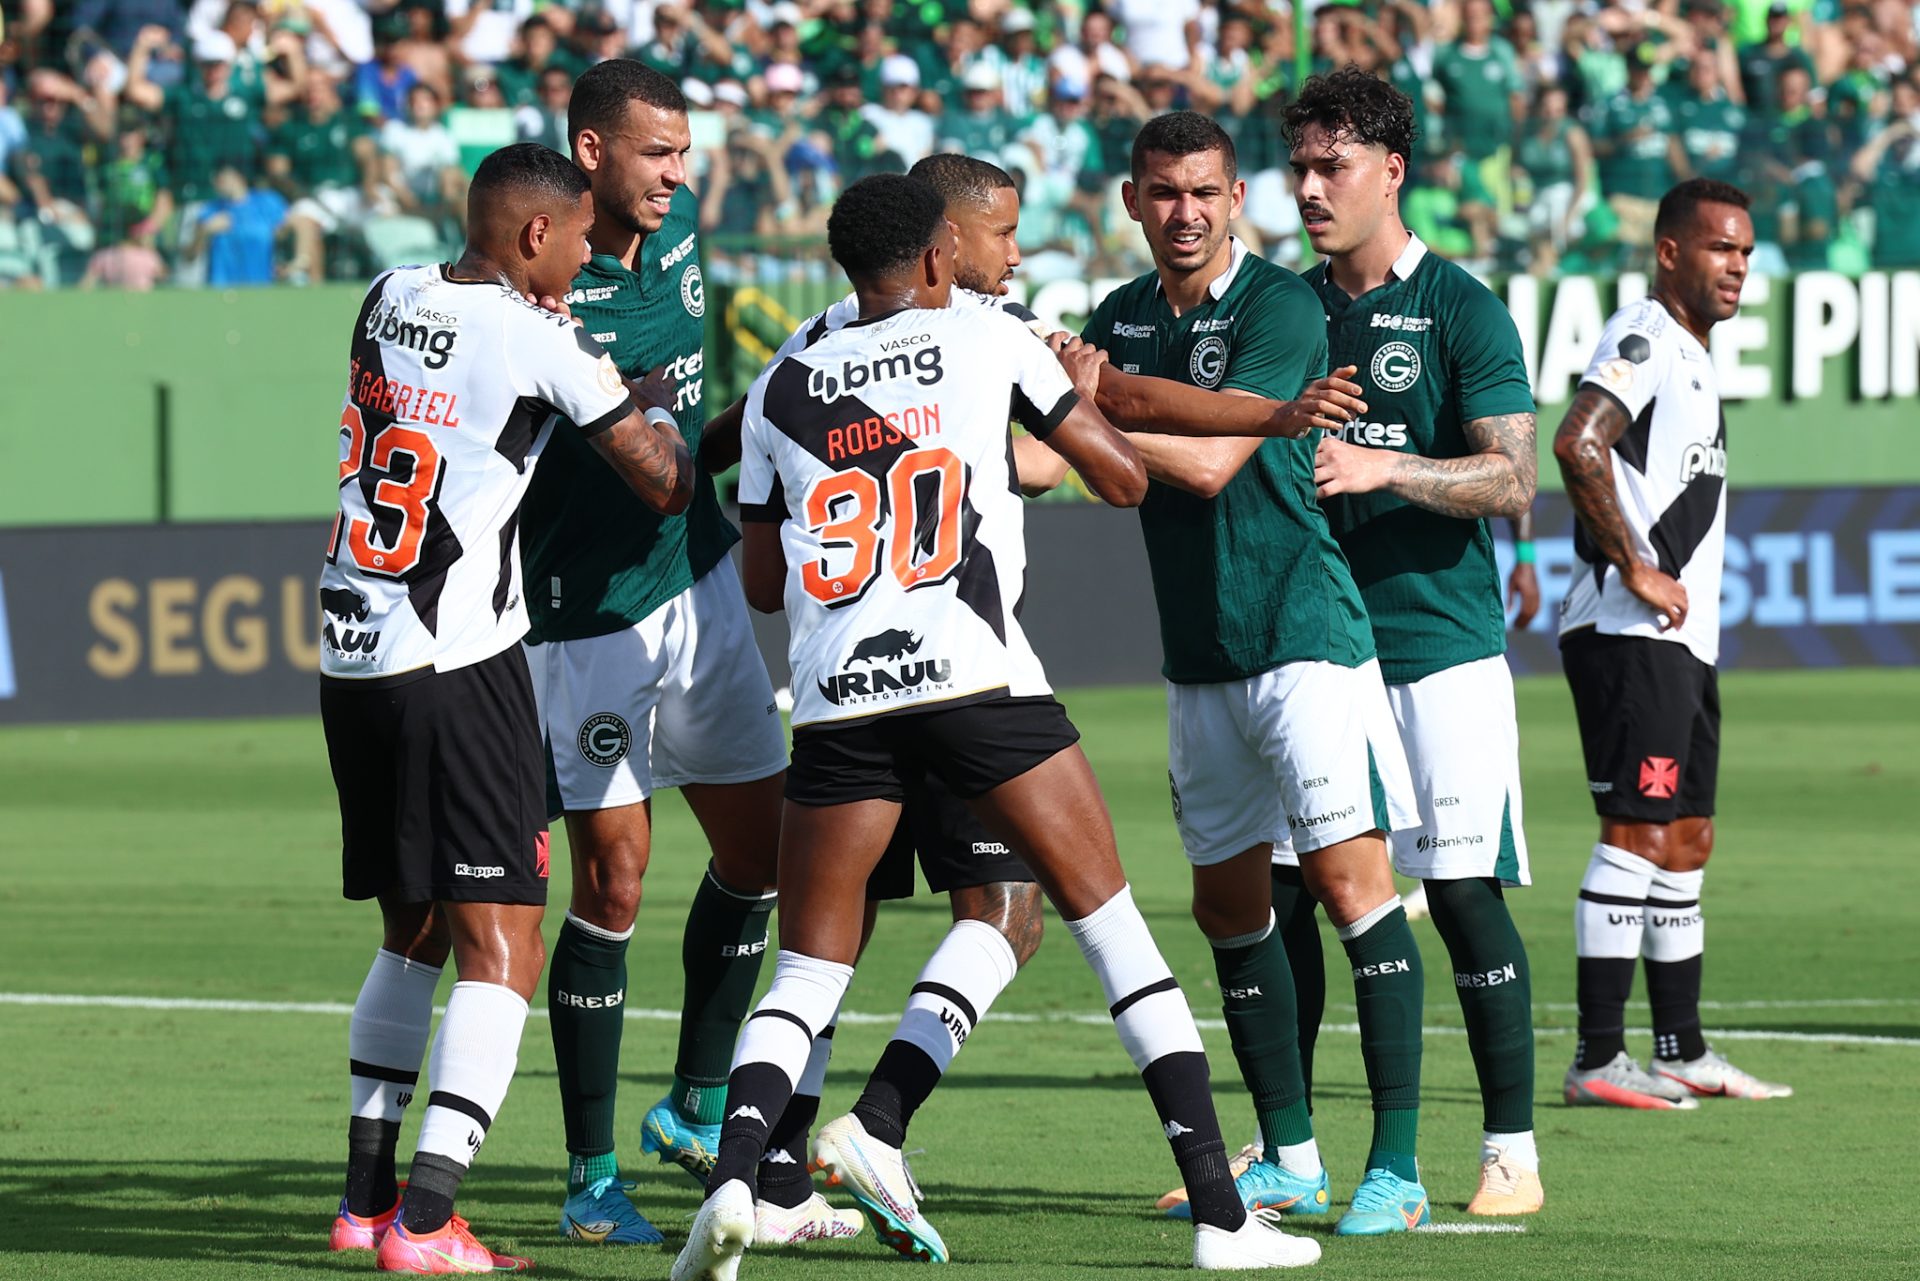 Jogadores disputam lance durante partida entre as equipes do Goiás e do Vasco - Foto: Lidiana Matos/Agência F8/Estadão Conteúdo